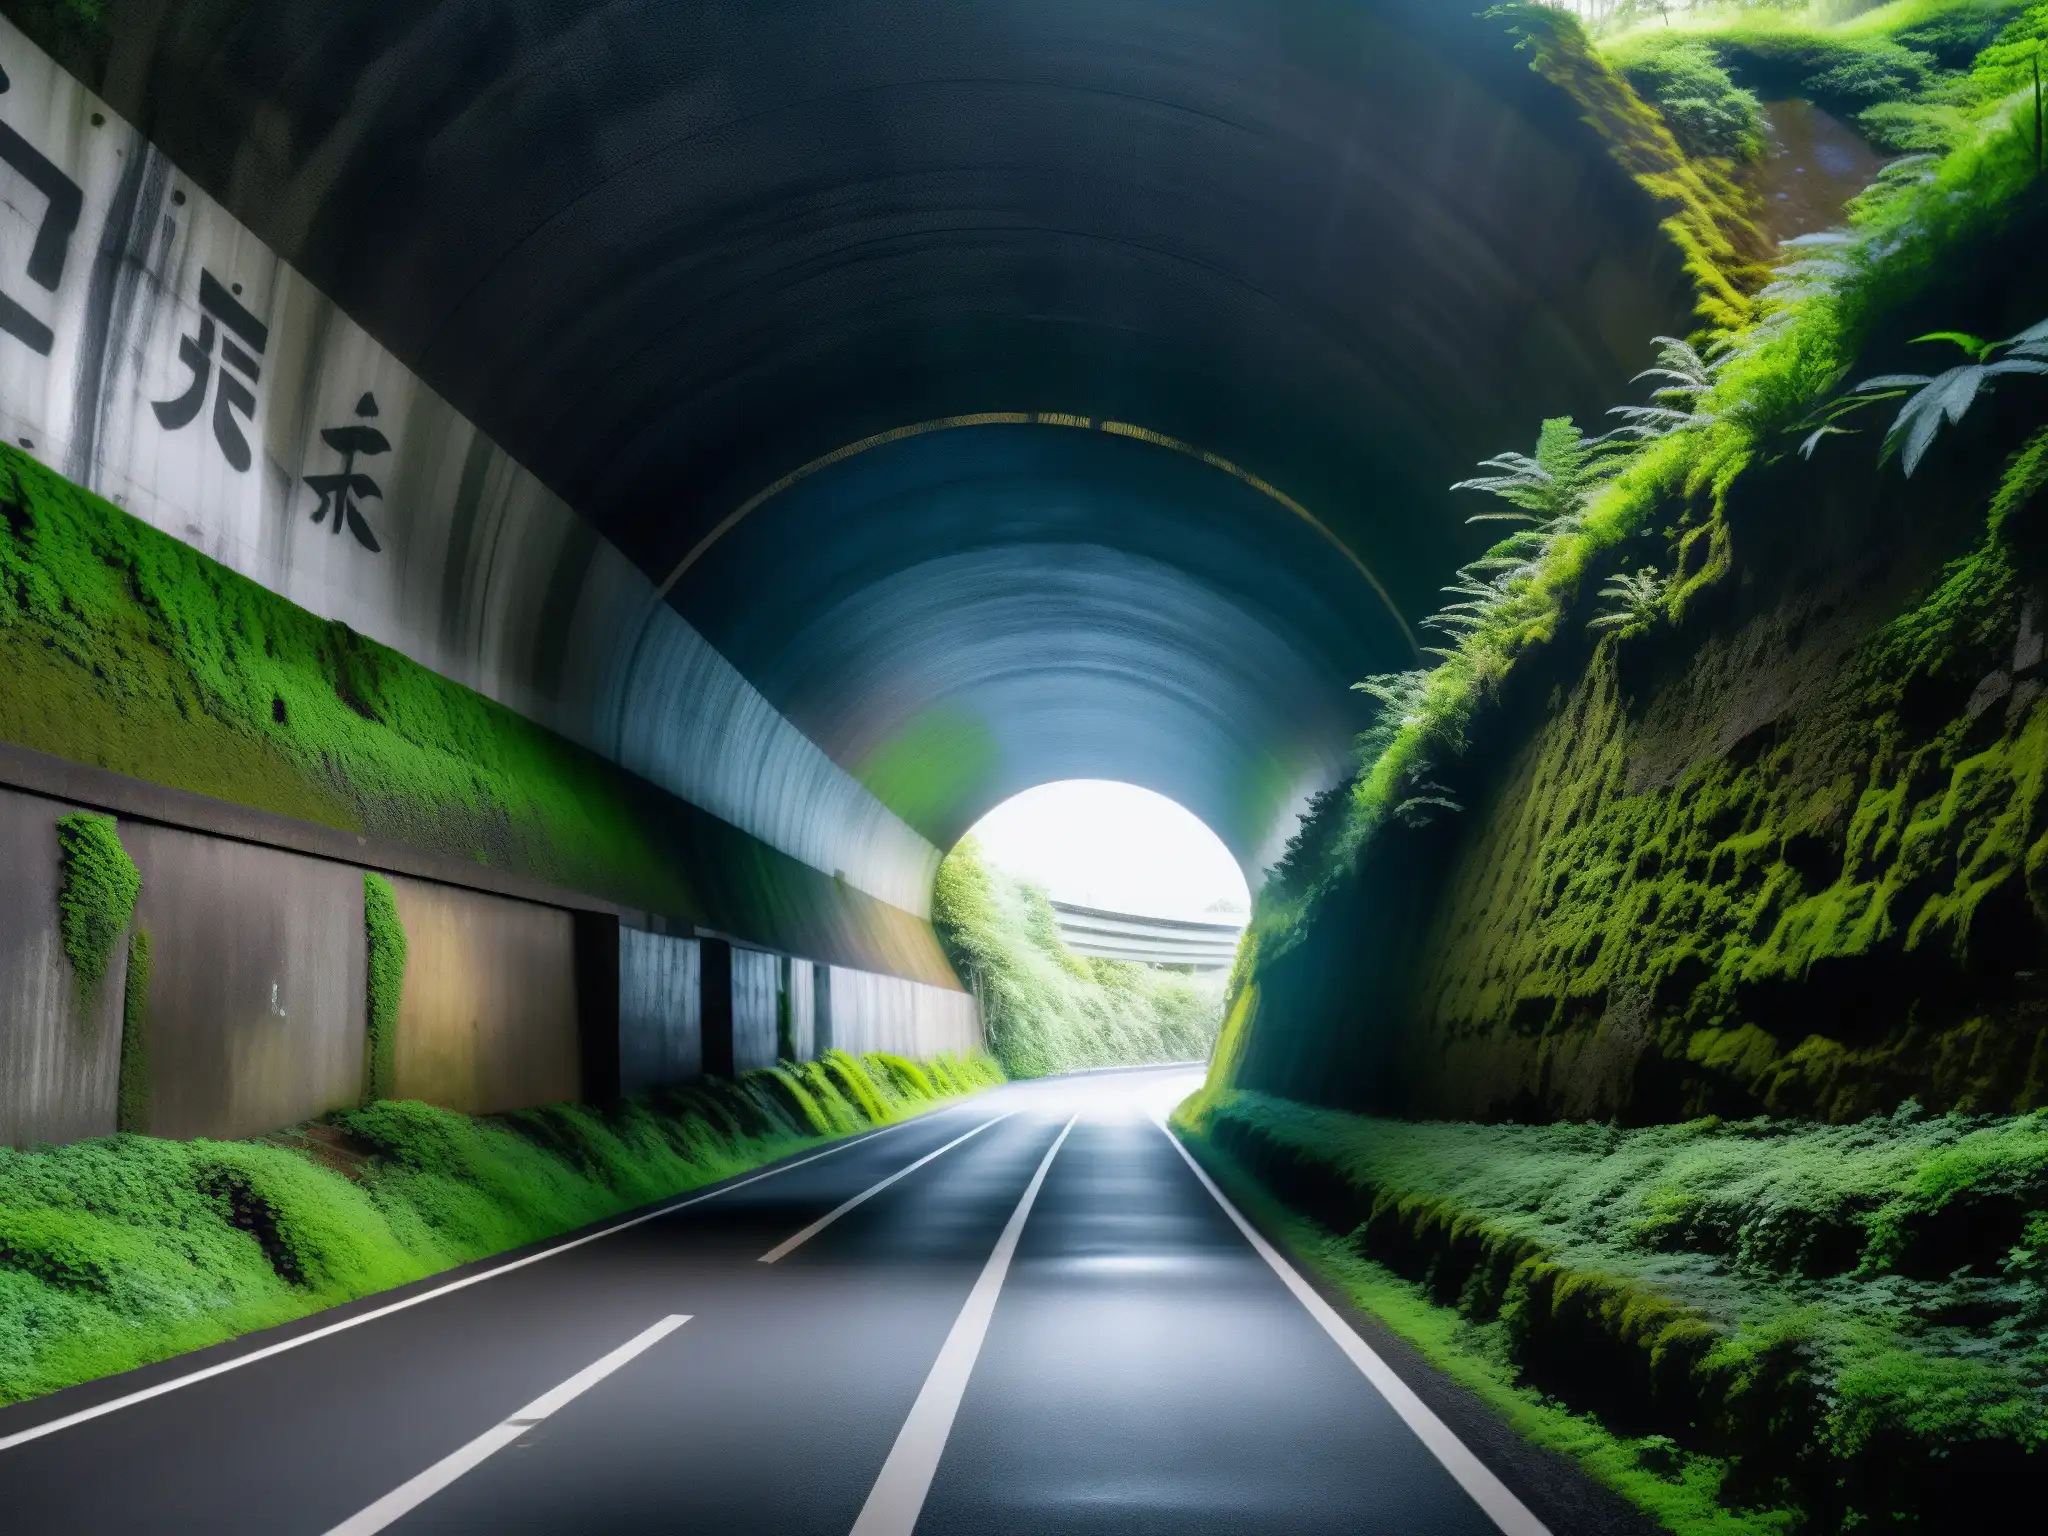 La entrada oscura y misteriosa al Túnel Kiyotaki, con luz filtrándose entre la densa vegetación